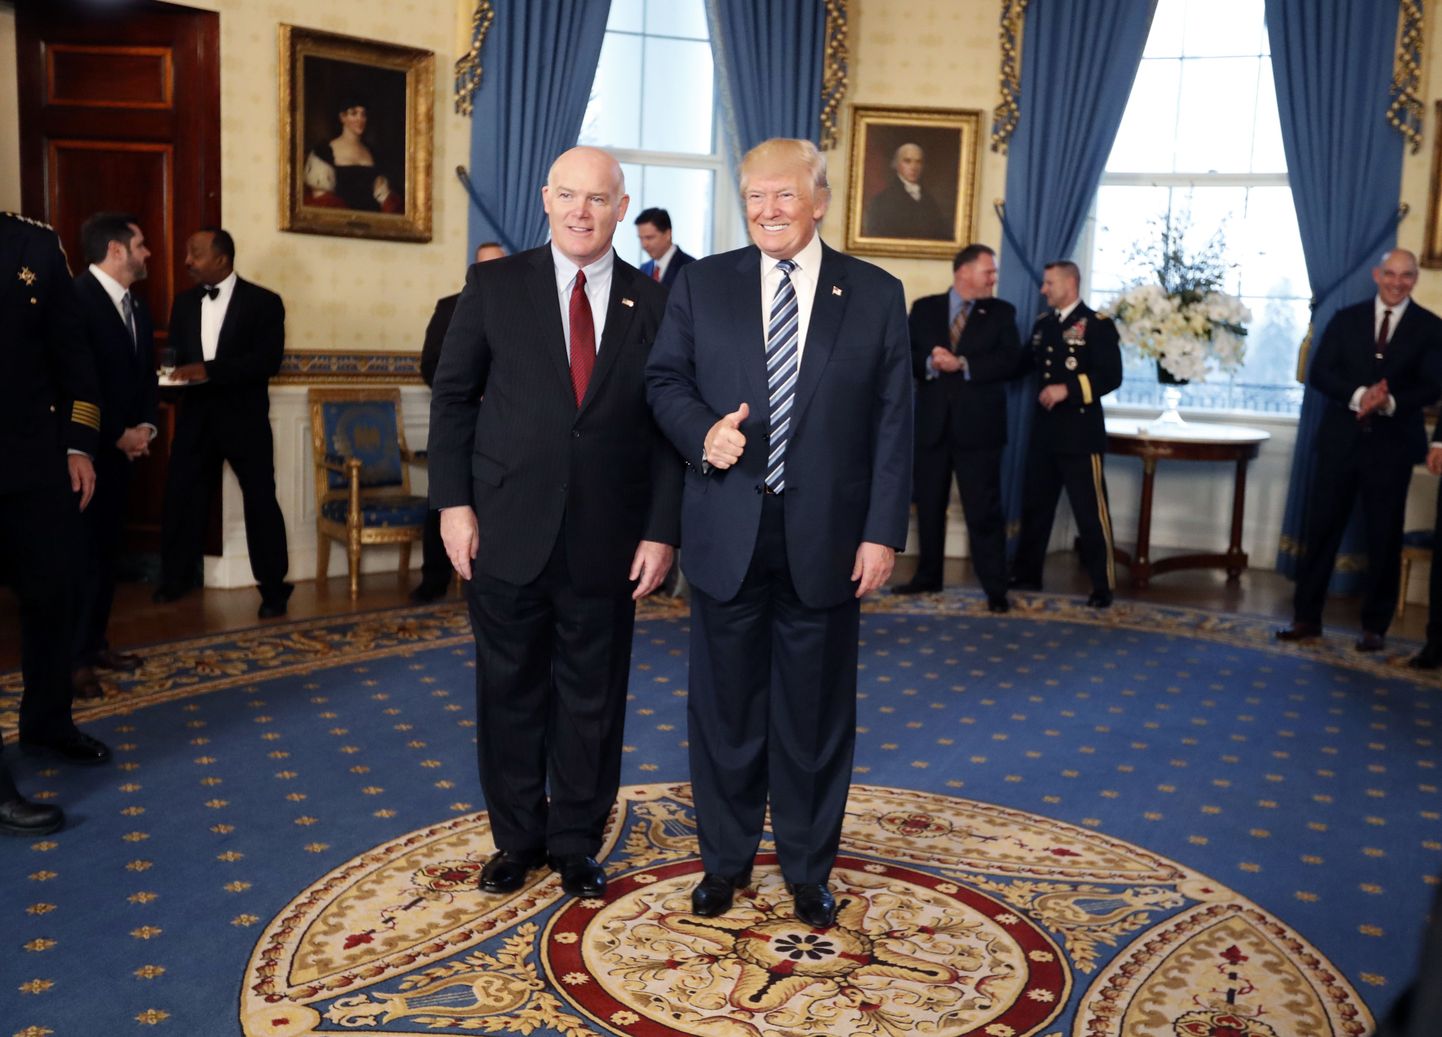 Salateenistuse juht Joseph Clancy (vasakul) koos president Donald Trumpiga